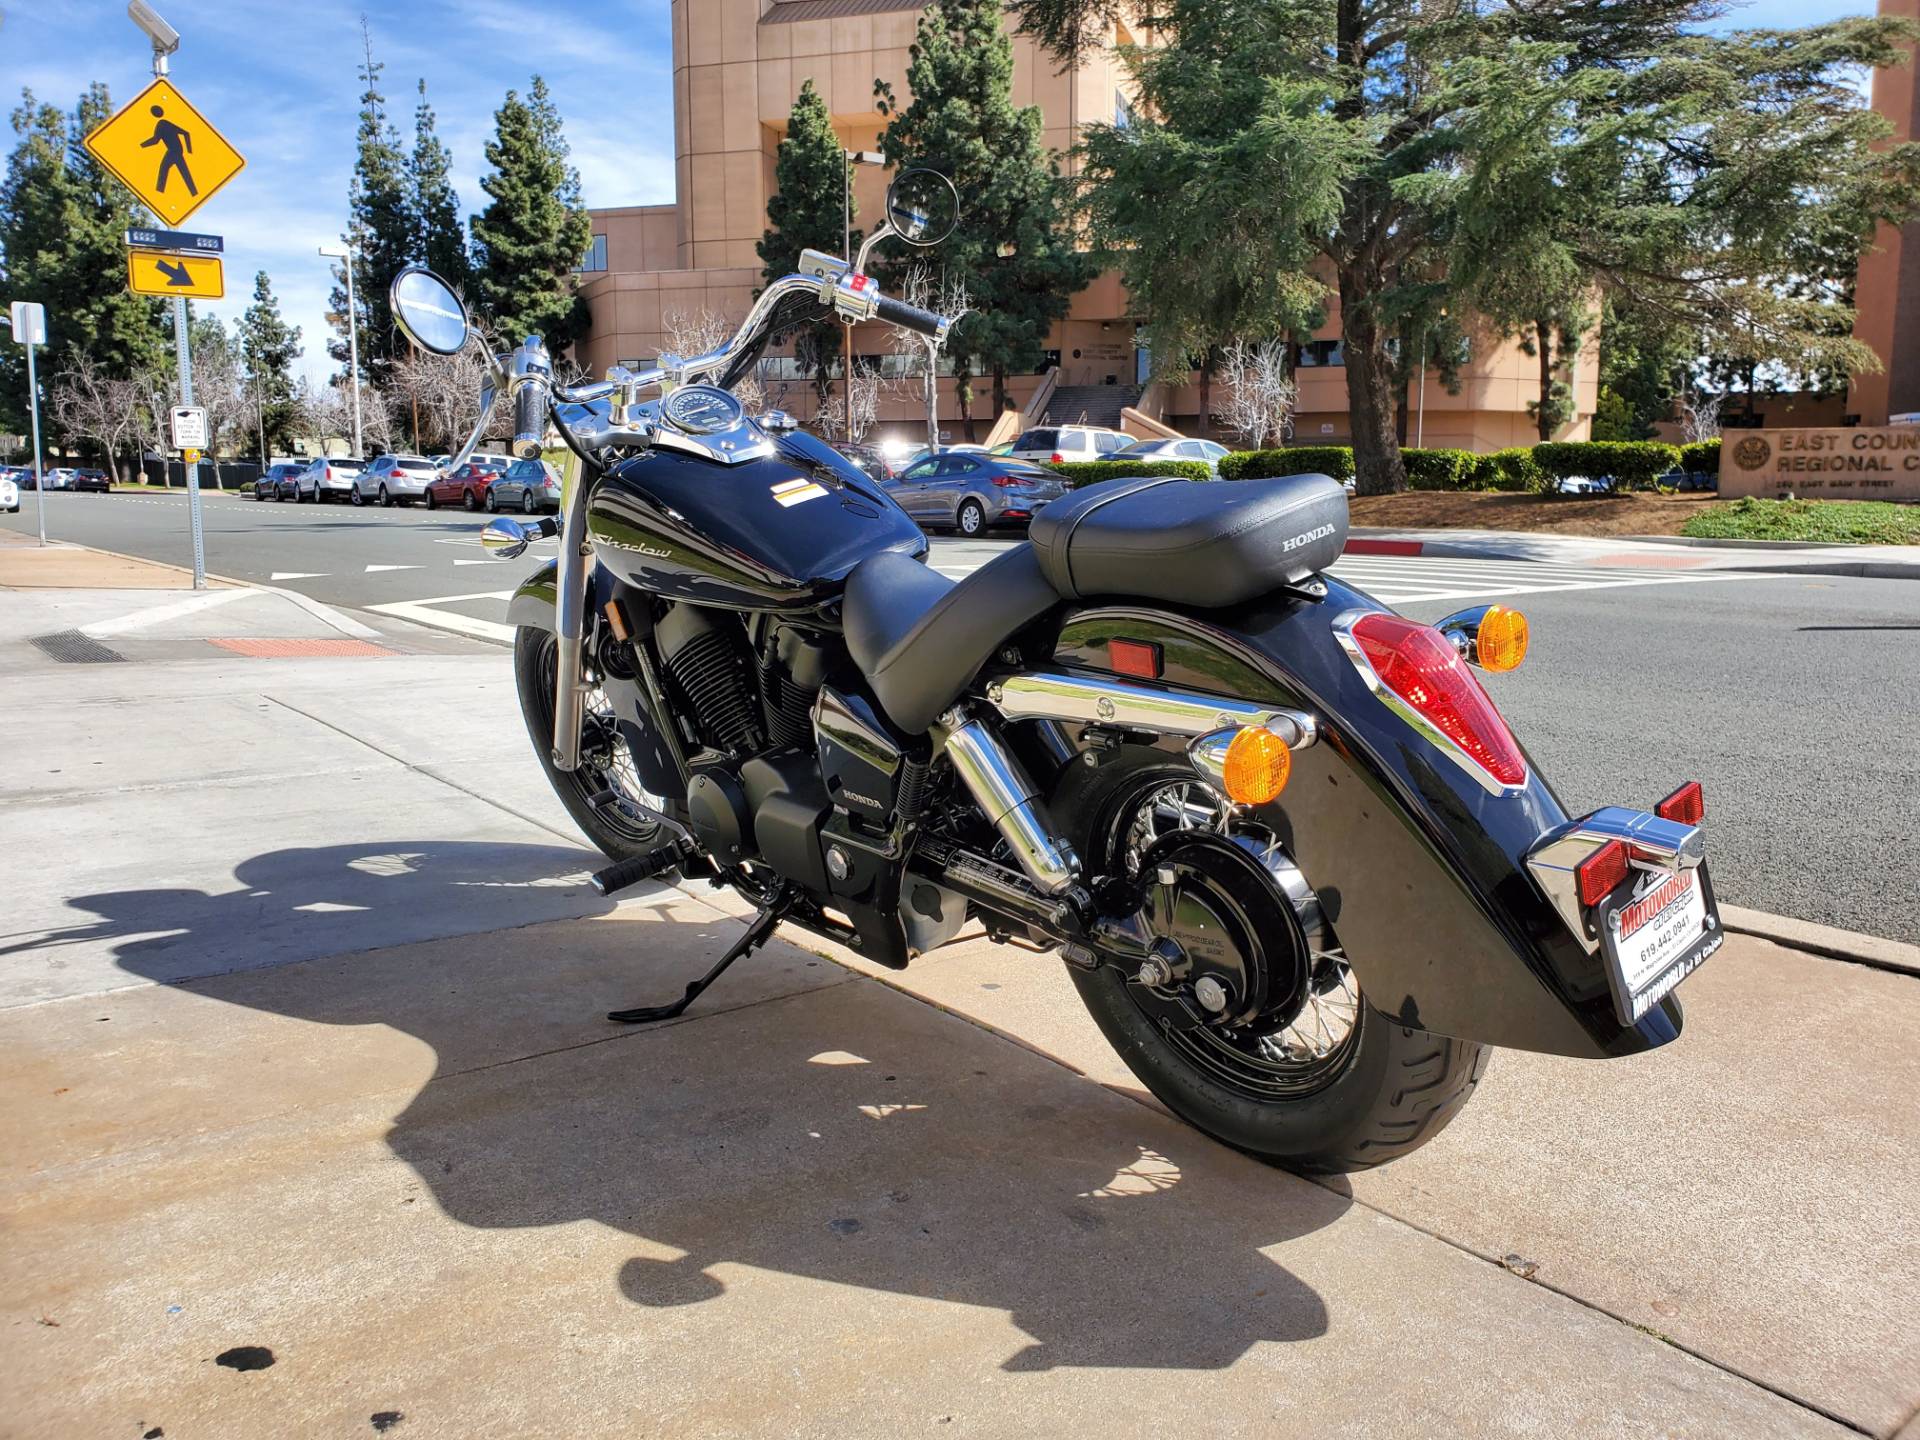 New Honda Shadow Aero 750 Motorcycles In El Cajon Ca N A Black